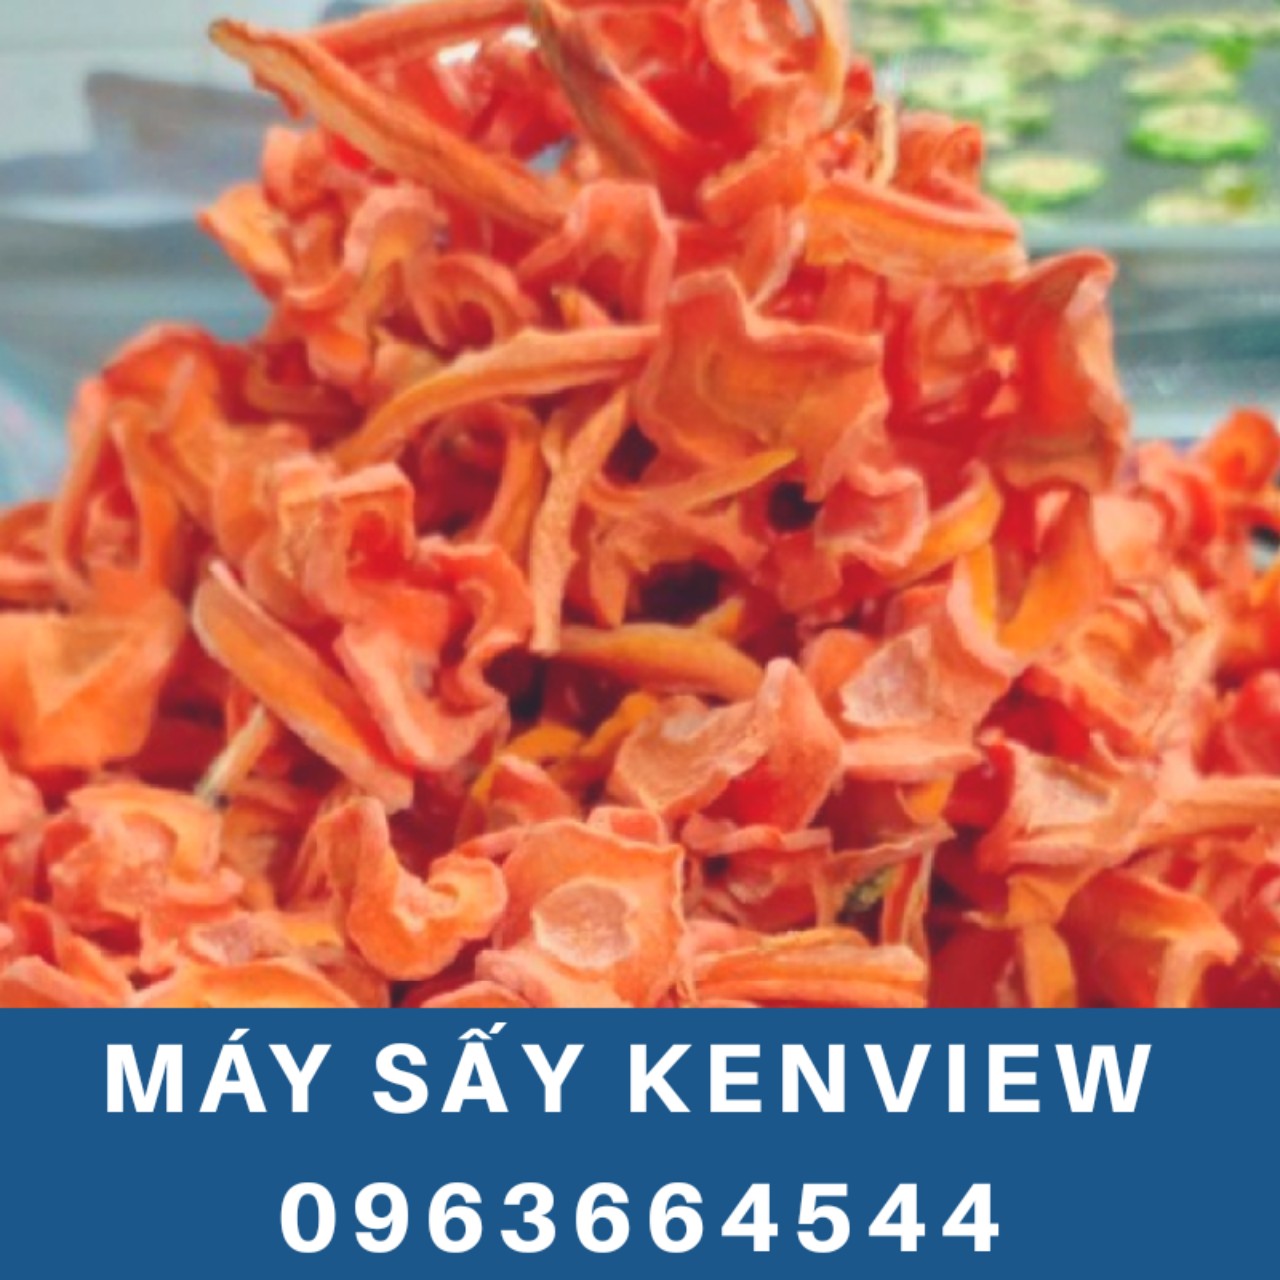 Kenview cung cấp máy sấy rau, củ, quả ở Lâm Đồng - Máy sấy thực phẩm